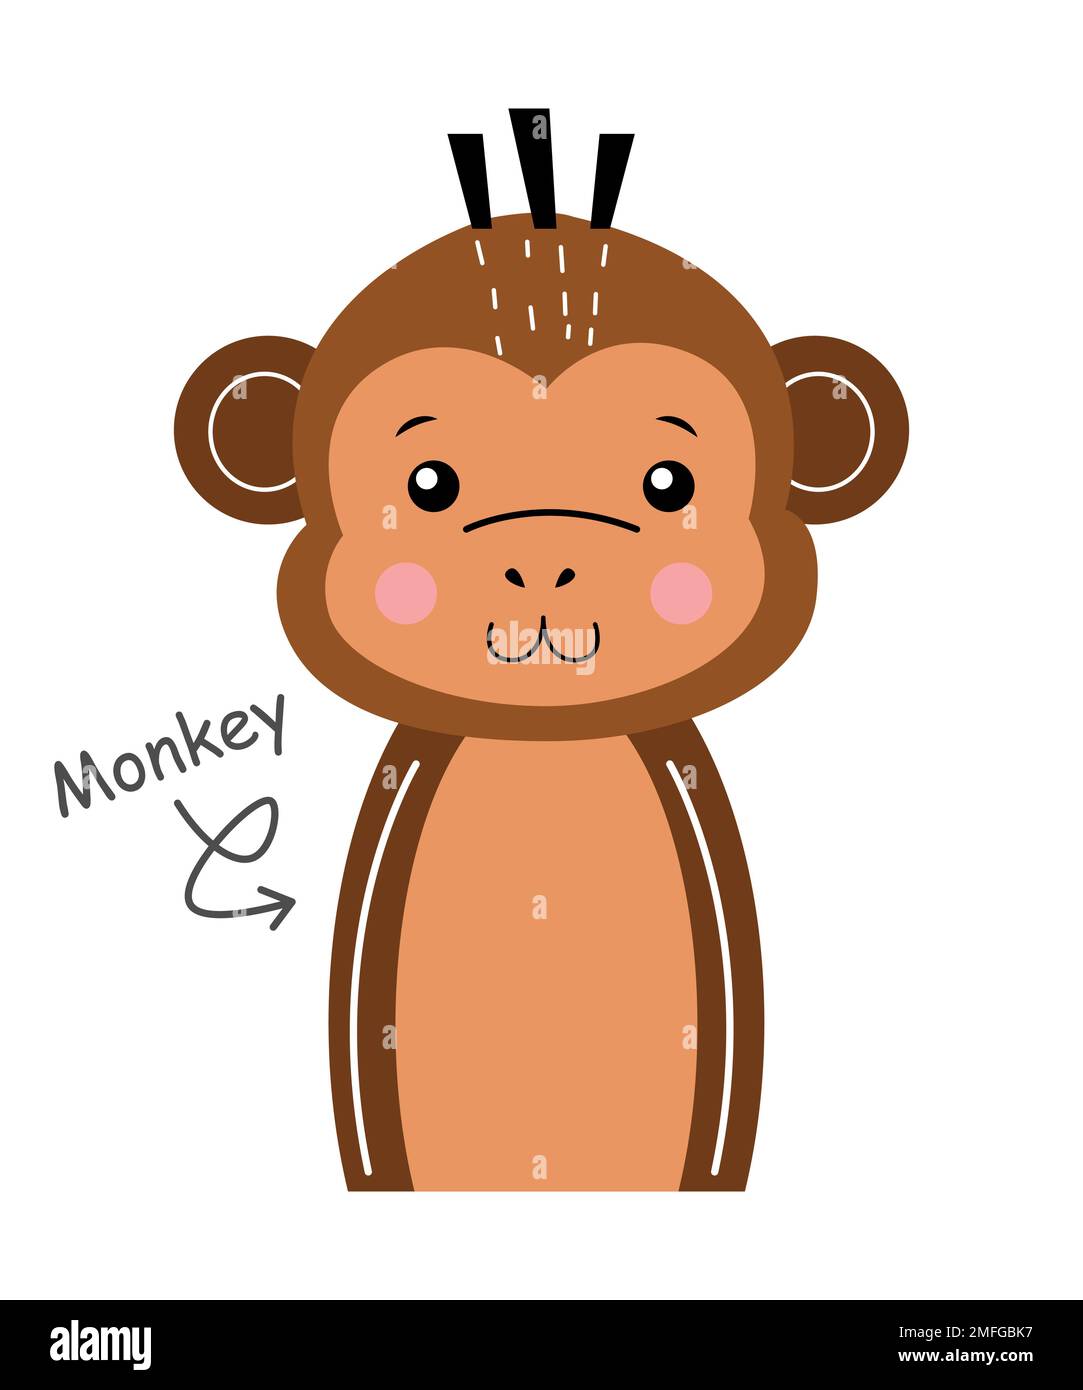 Vectores e ilustraciones de Mono mecanico para descargar gratis